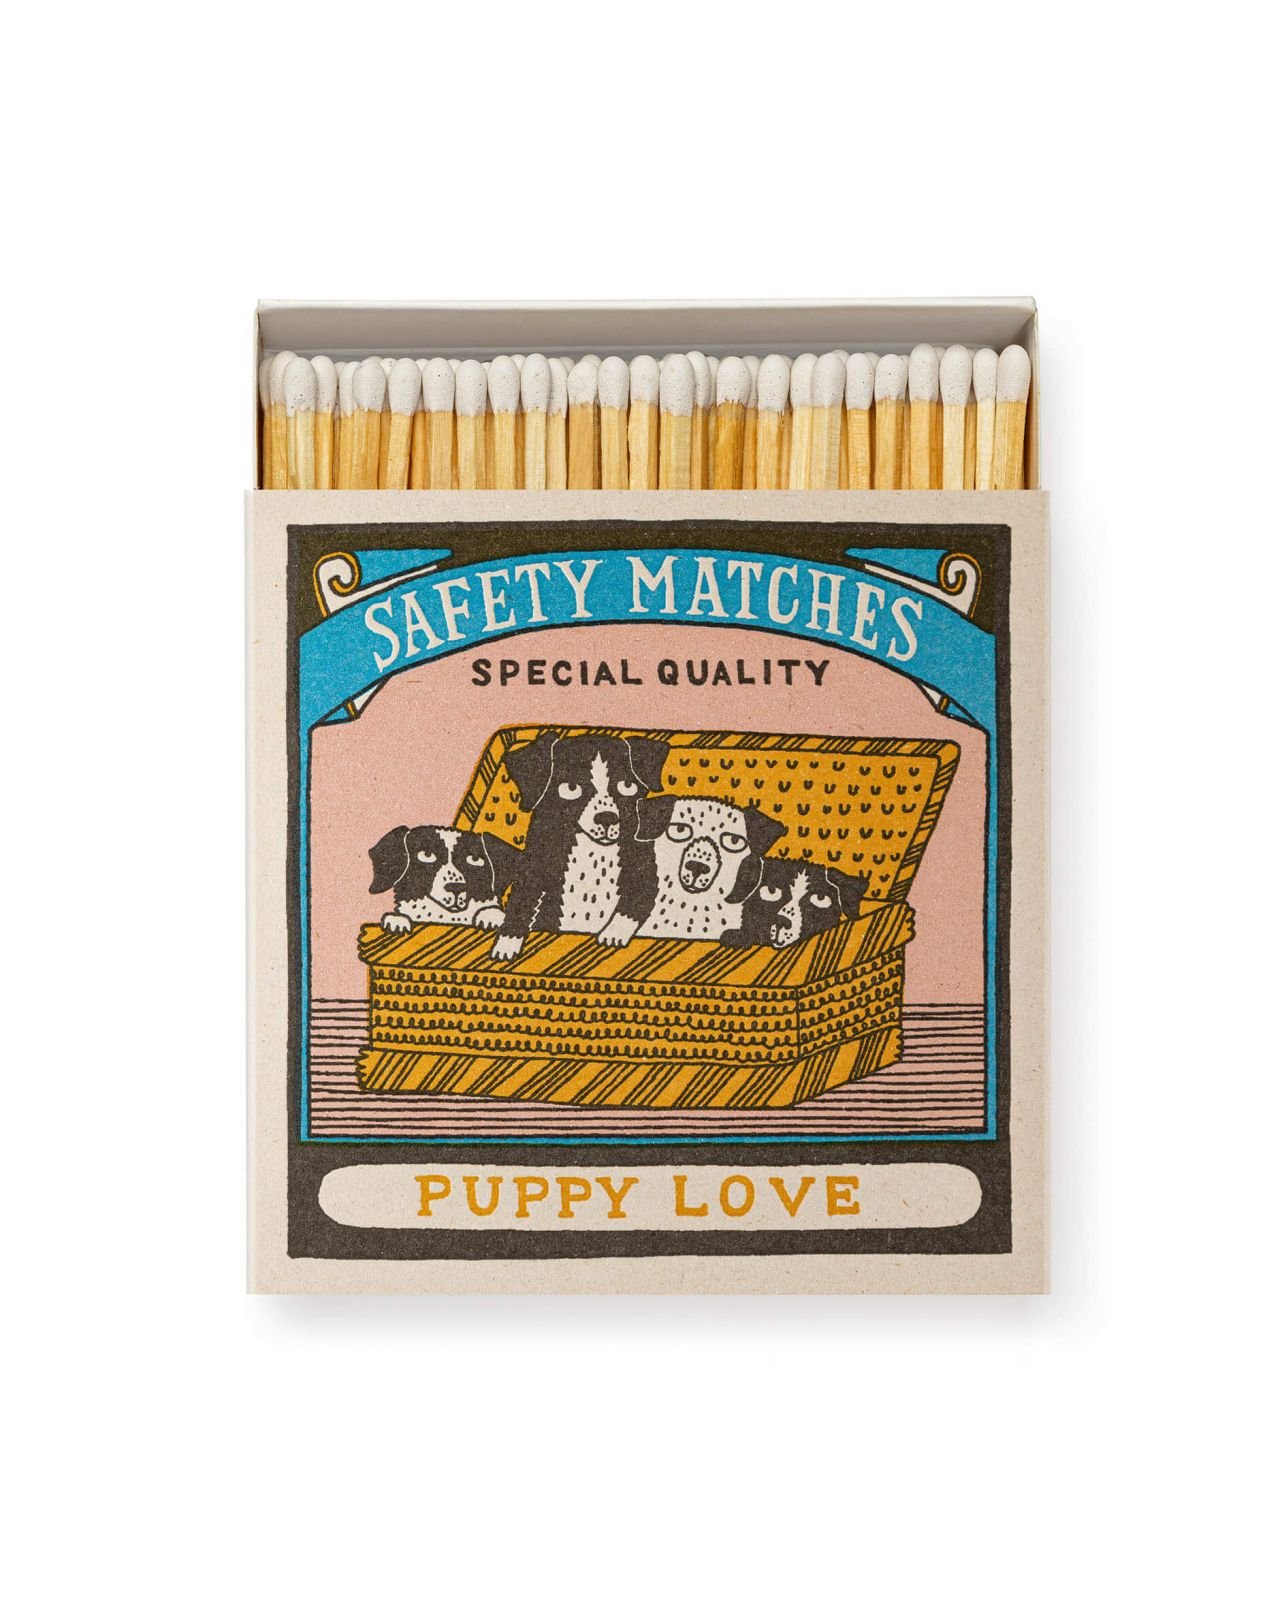 Puppy Love Matches